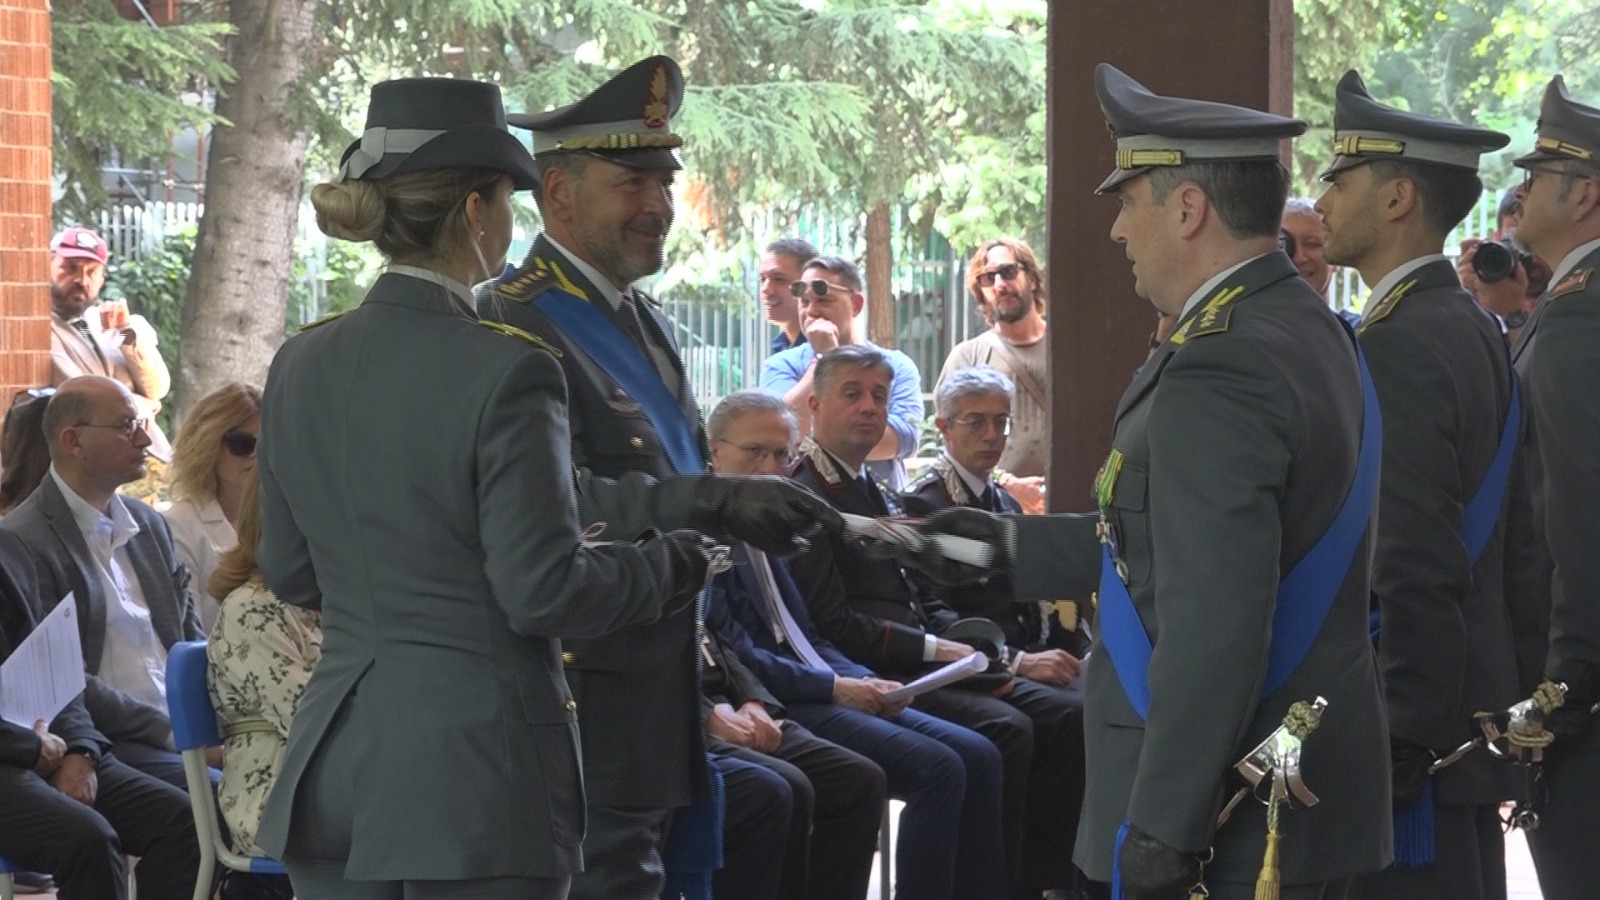 Avellino| 248° anniversario della Guardia di Finanza, il bilancio del comandante provinciale Minale